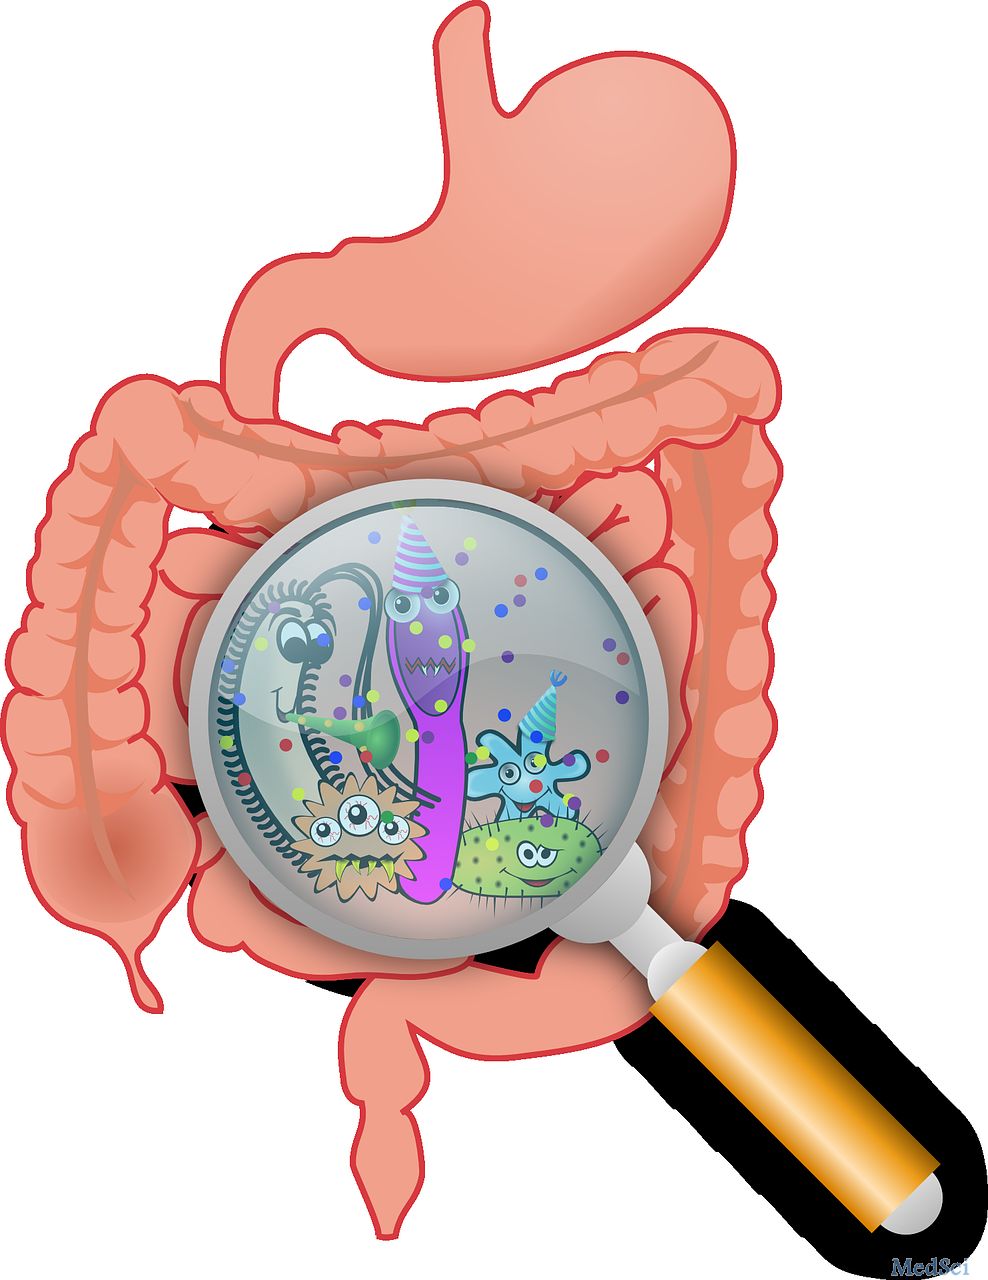 Gut：低聚半乳糖缓解<font color="red">铁</font>元素对肠道微生物的不良影响